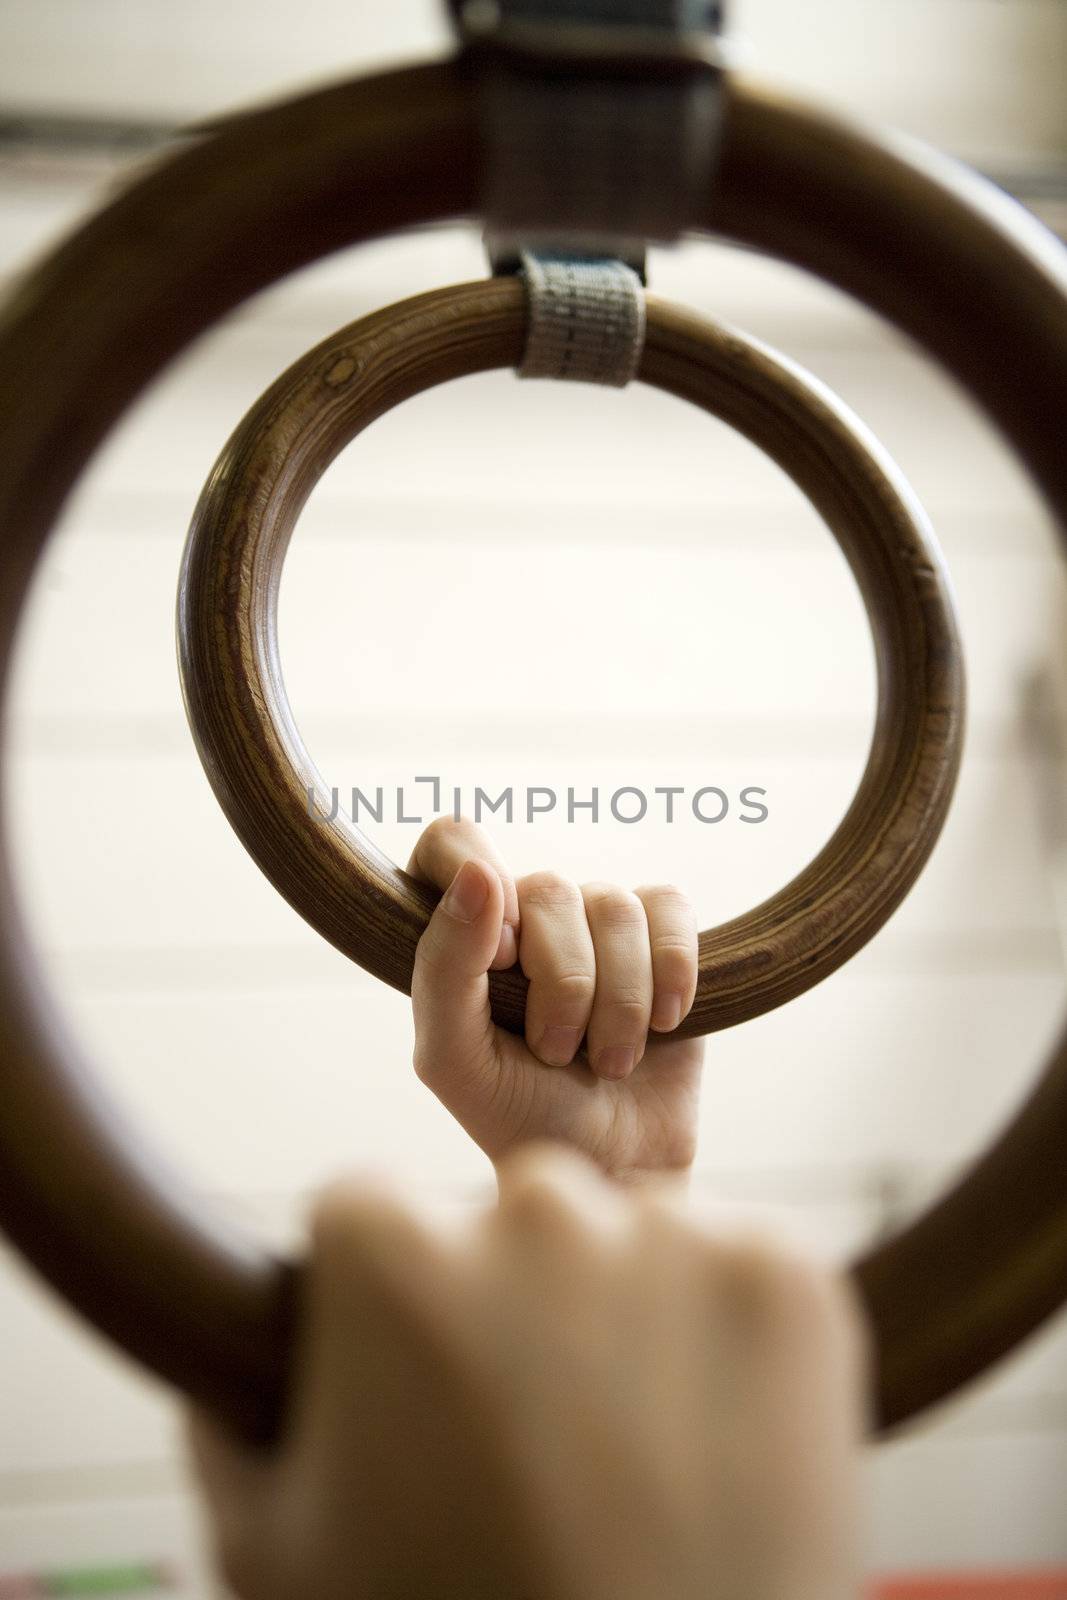 Gymnastic Rings by gemenacom